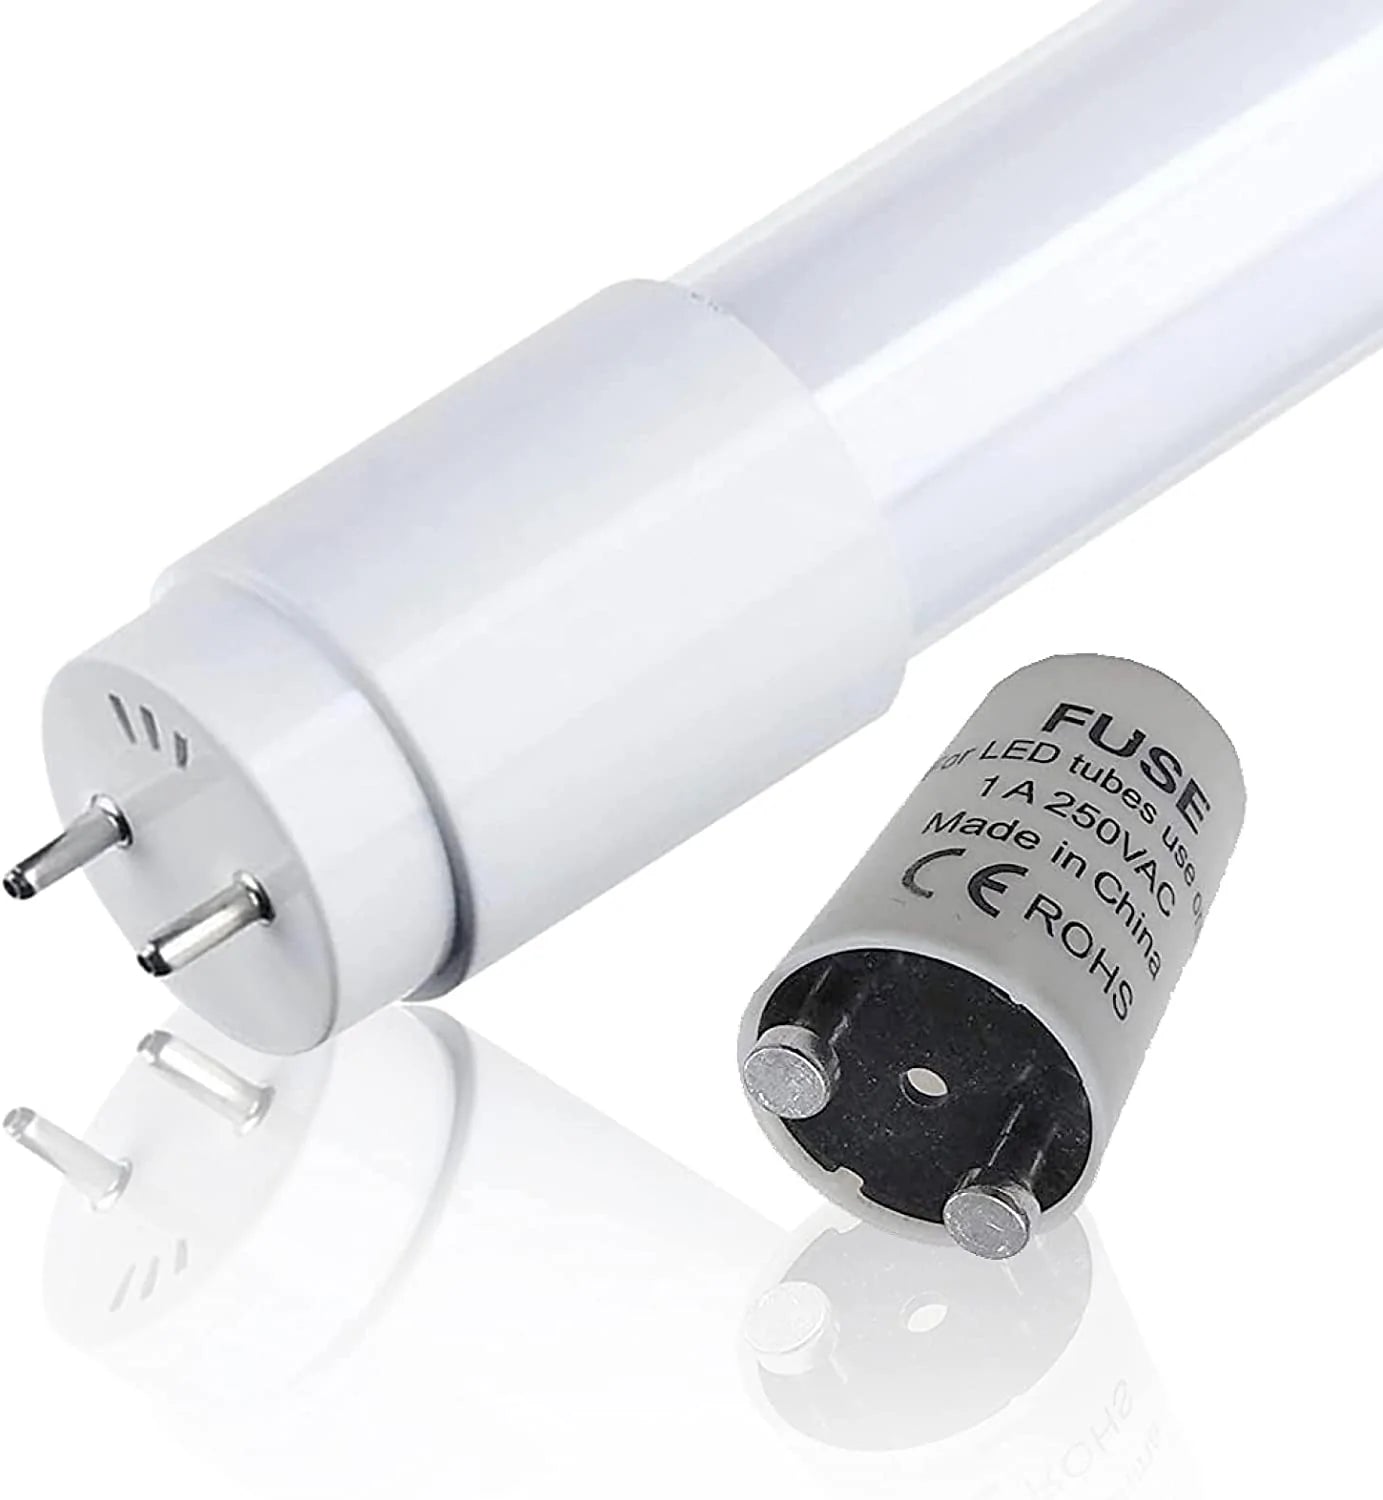 Pack de 10 tubes LED T8 1m50 25W - Couleur blanc froid/neutre (150cm) Fonatech